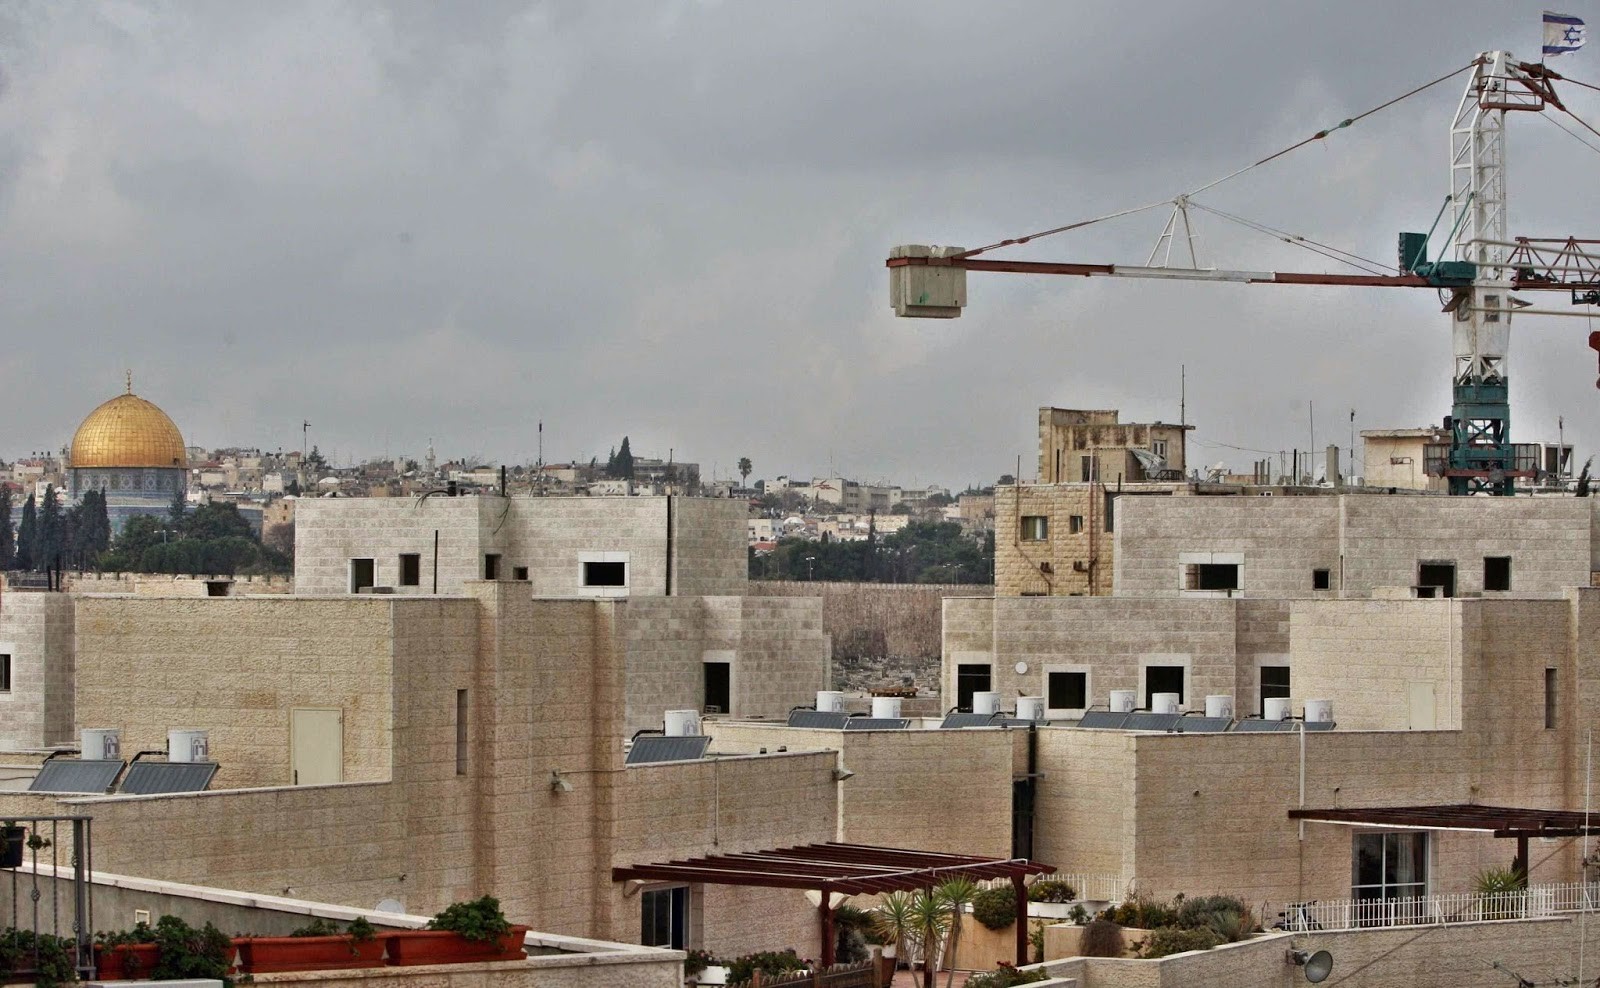 كشف النقاب عن مخططات بناء استيطاني مستقبلي في القدس